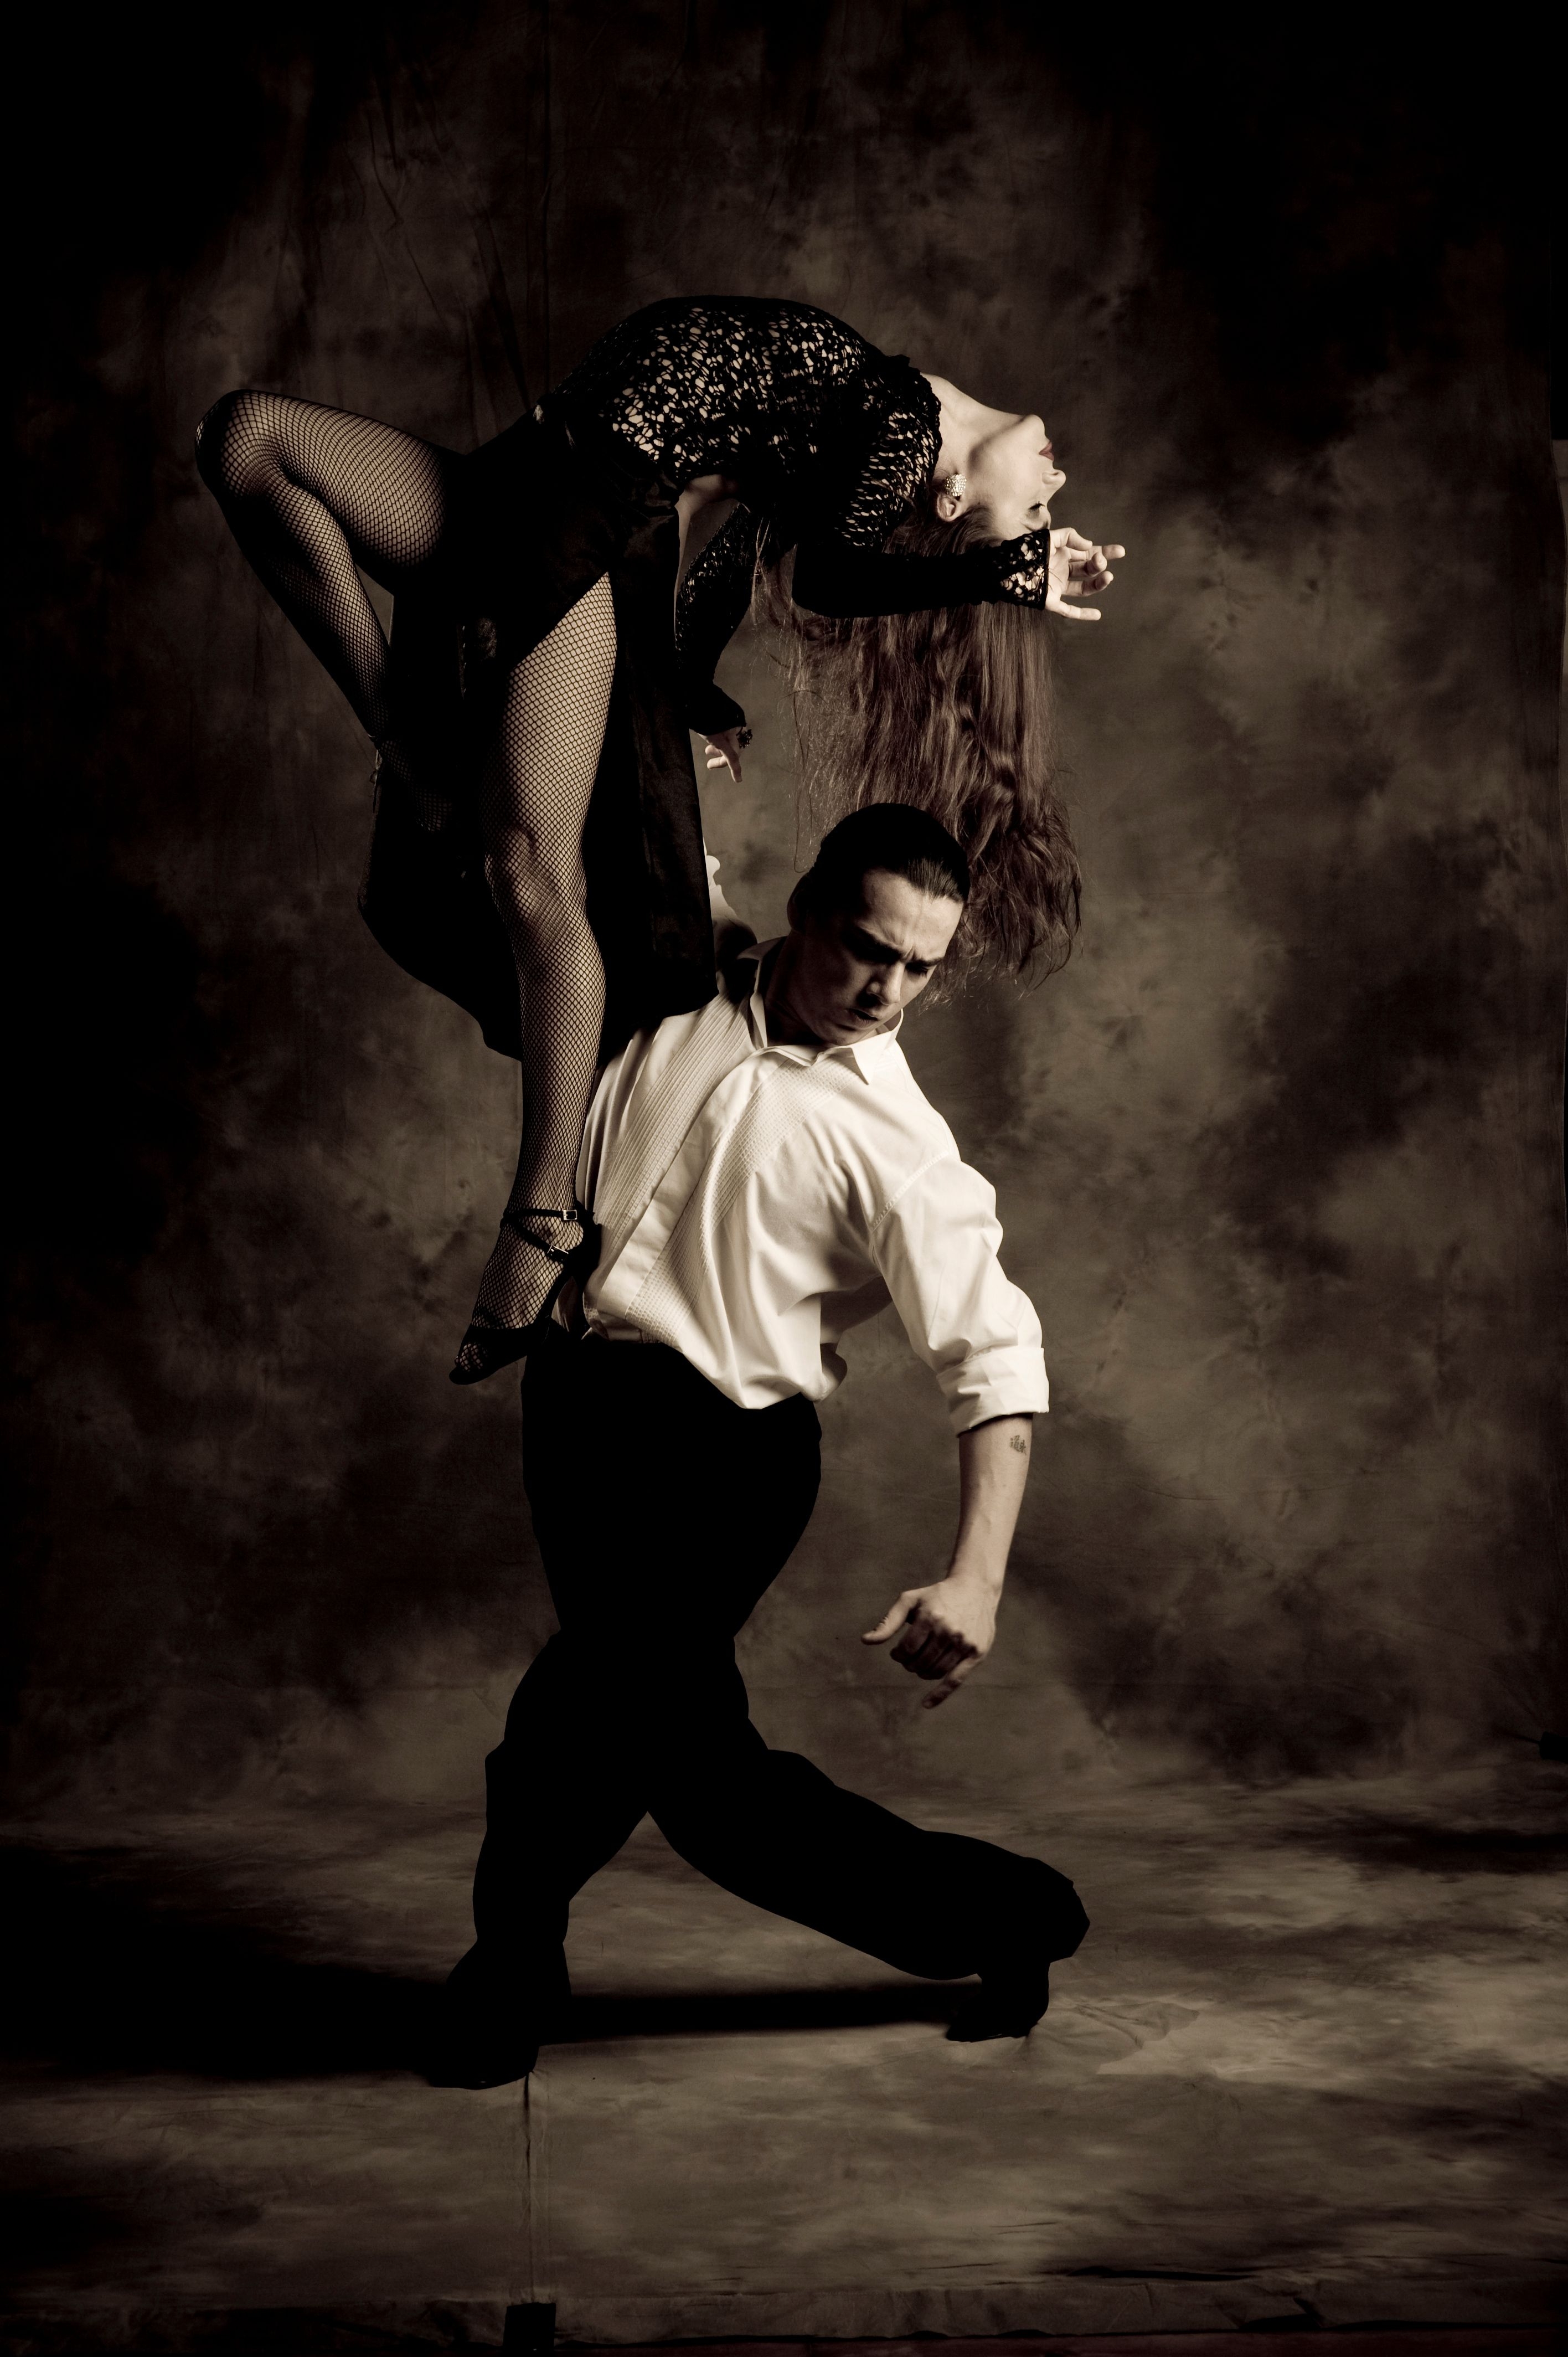 Красивый танец мужчины. Танец мужчины и женщины. Танго. Танго танец. Танцующая пара в темноте.